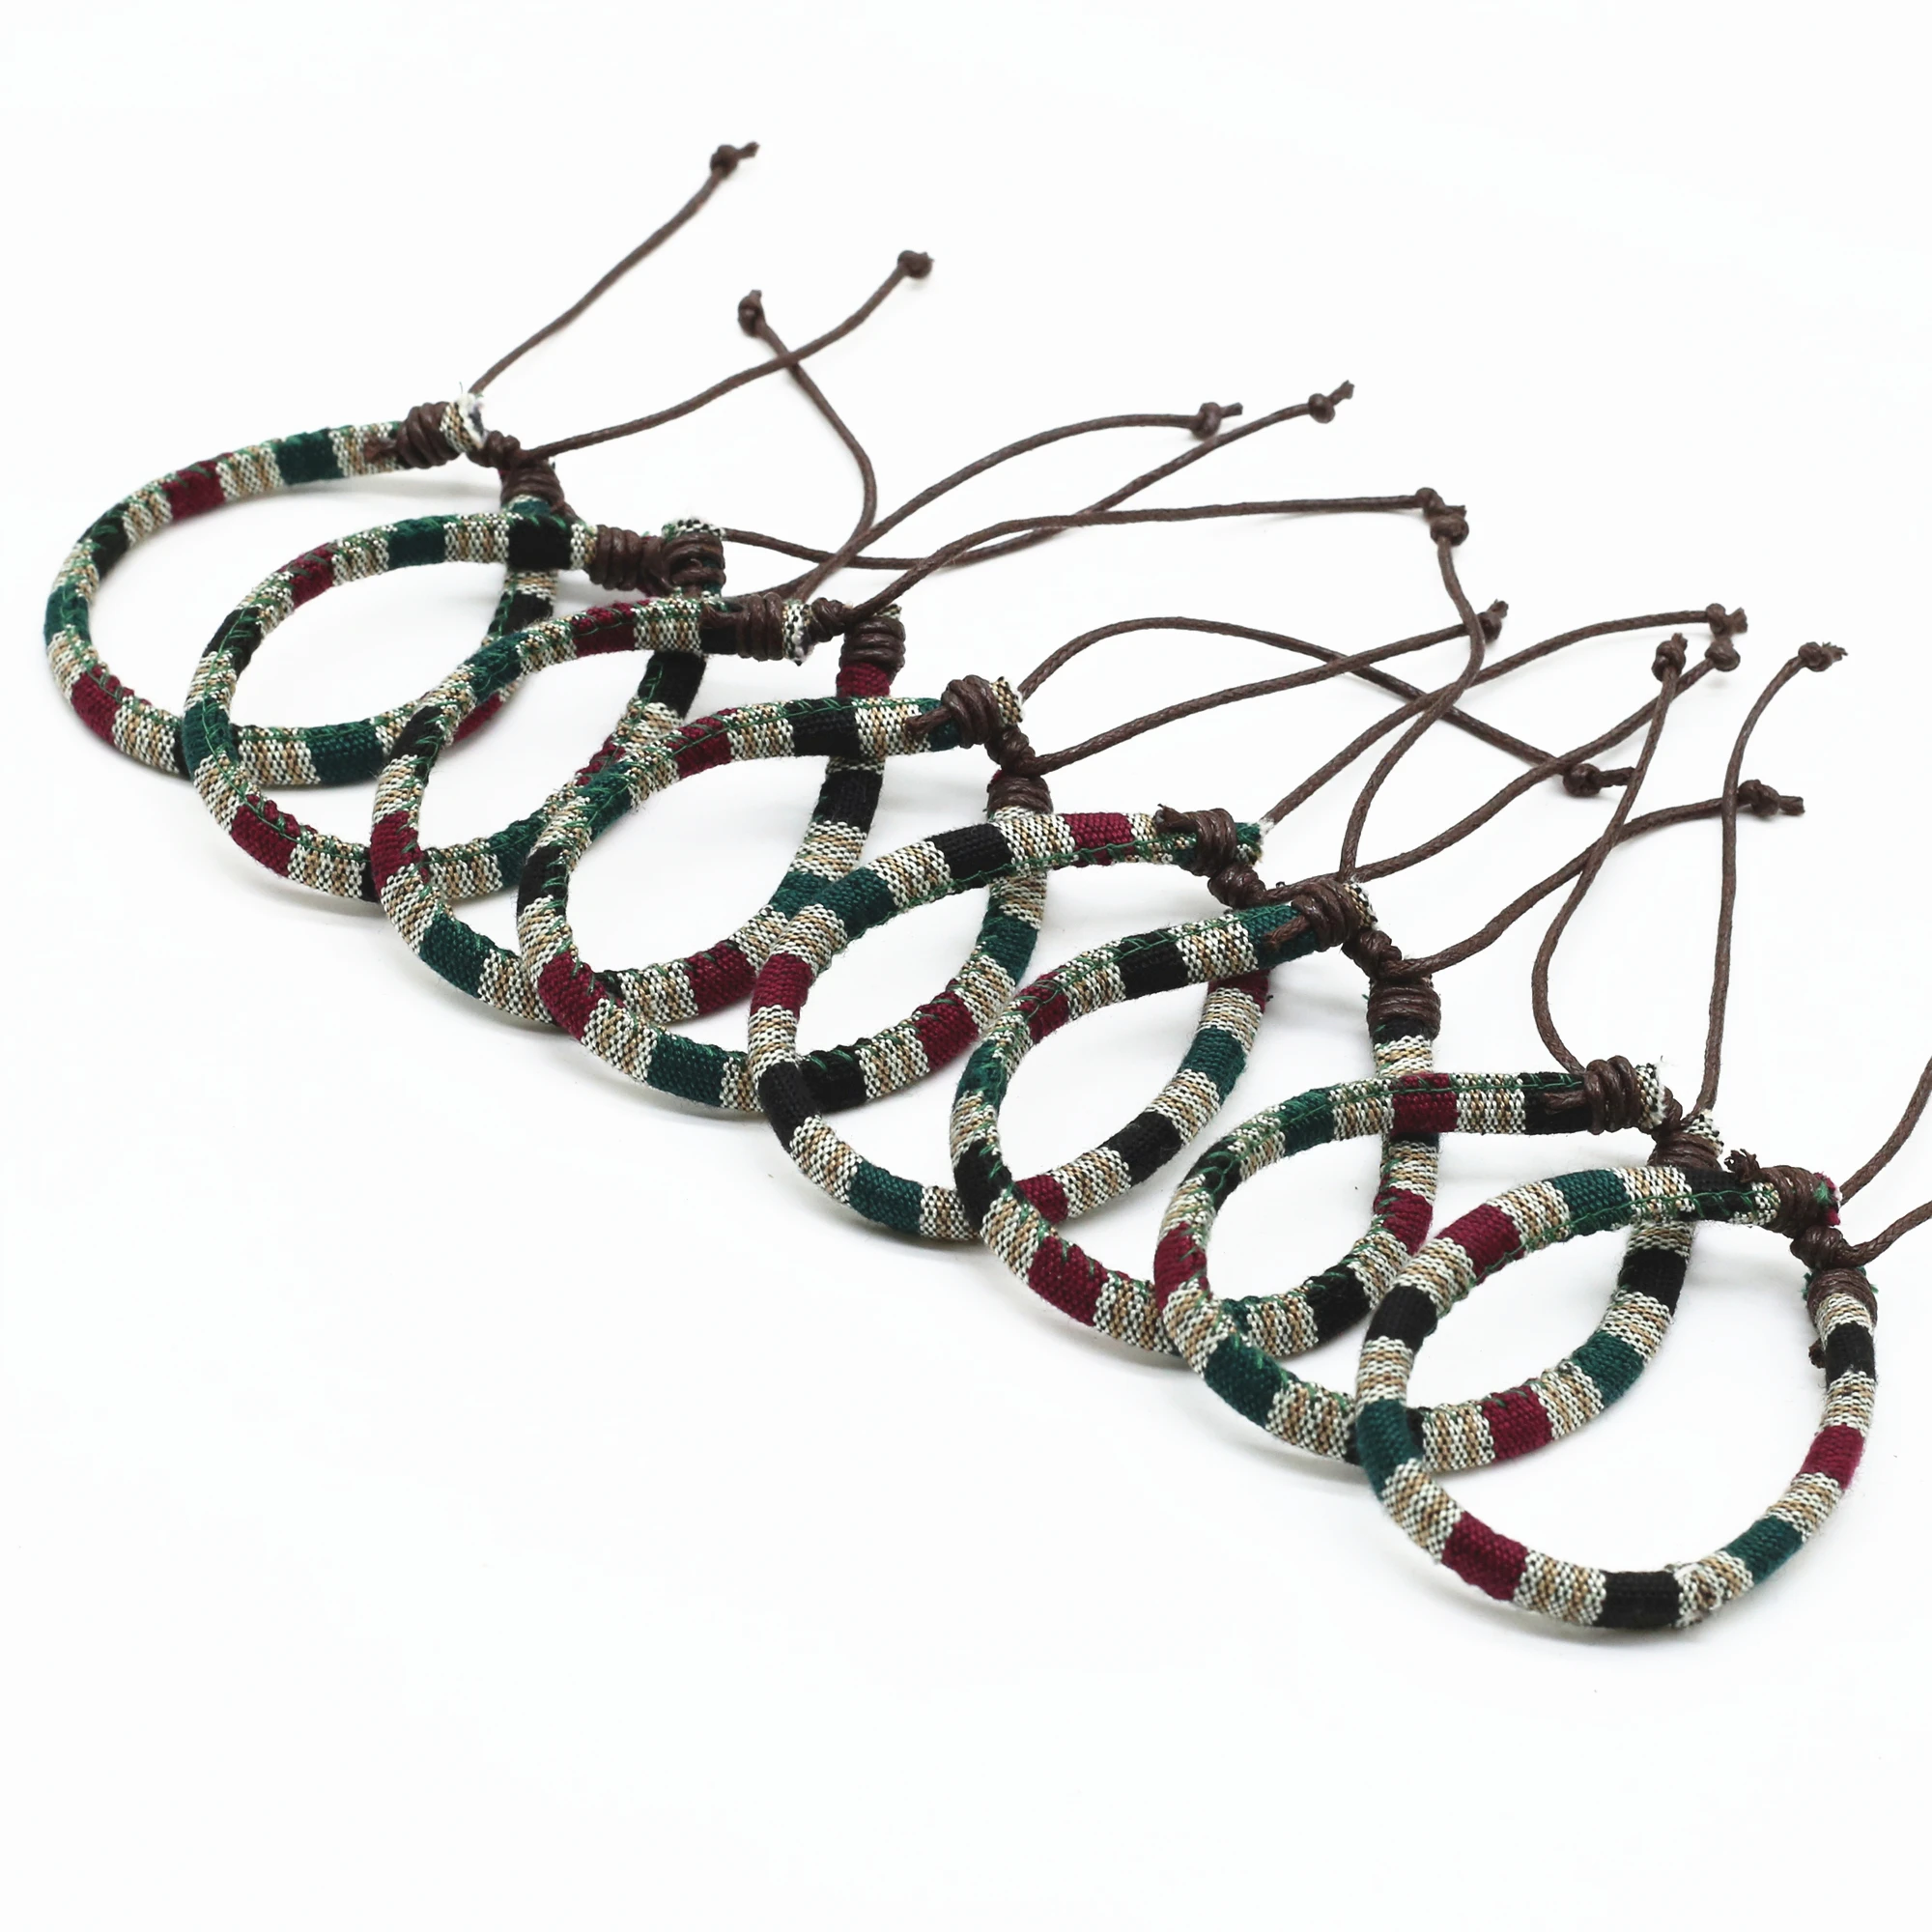 WestBull braccialetti intrecciati corda etnica Vintage multicolore per donna uomo Pulsera maschio Femme Homme regalo gioielli all'ingrosso